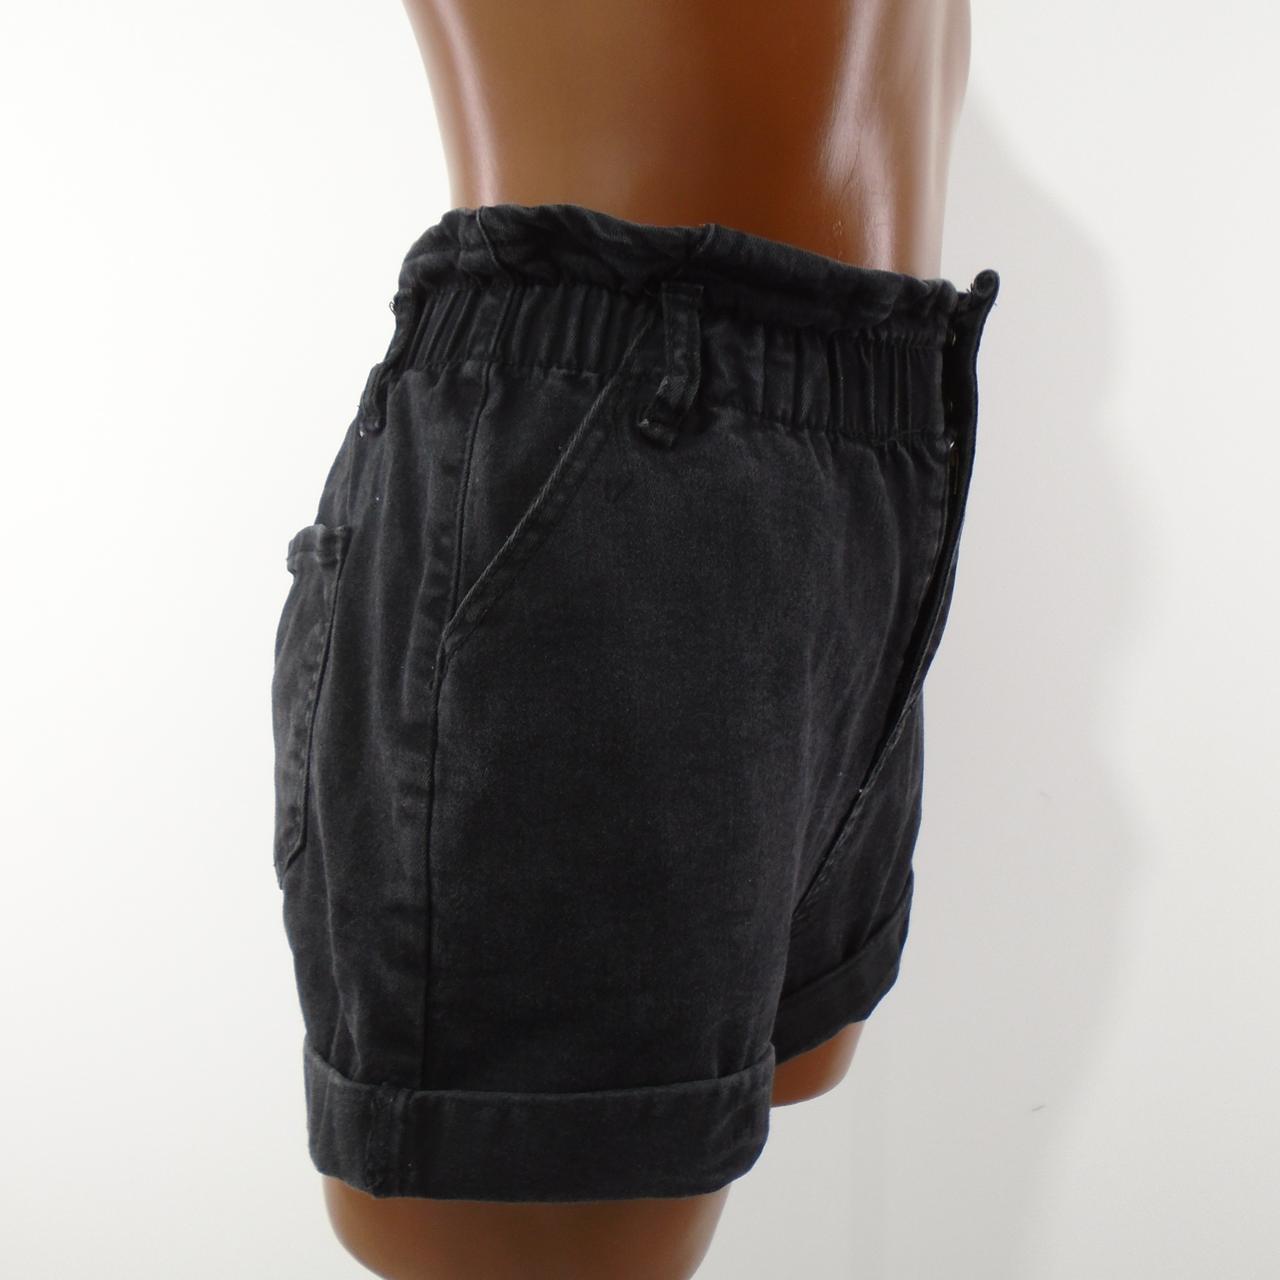 Pantalones cortos de mujer fáciles de usar. Negro. S. Usado. Bien